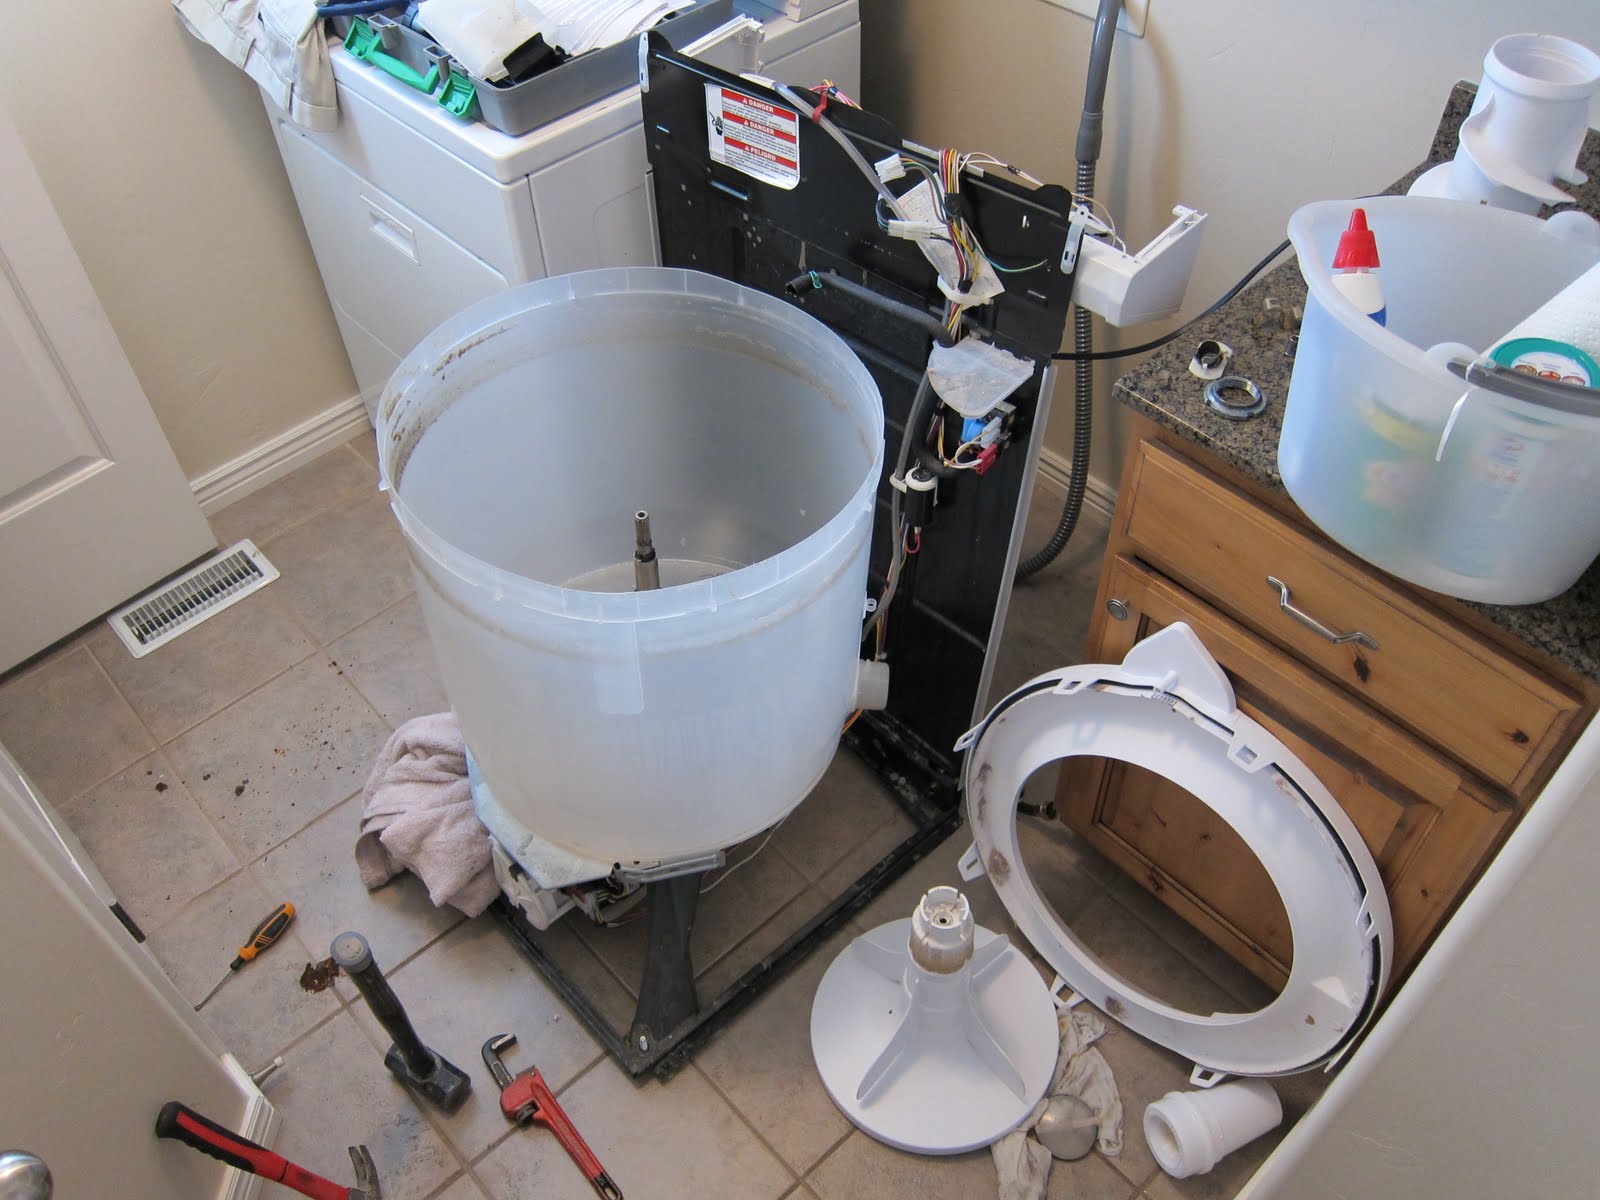 Máy sấy quần áo LG inverter DVHP09B có cẩn vệ sinh không, bao lâu thì nên vệ sinh?